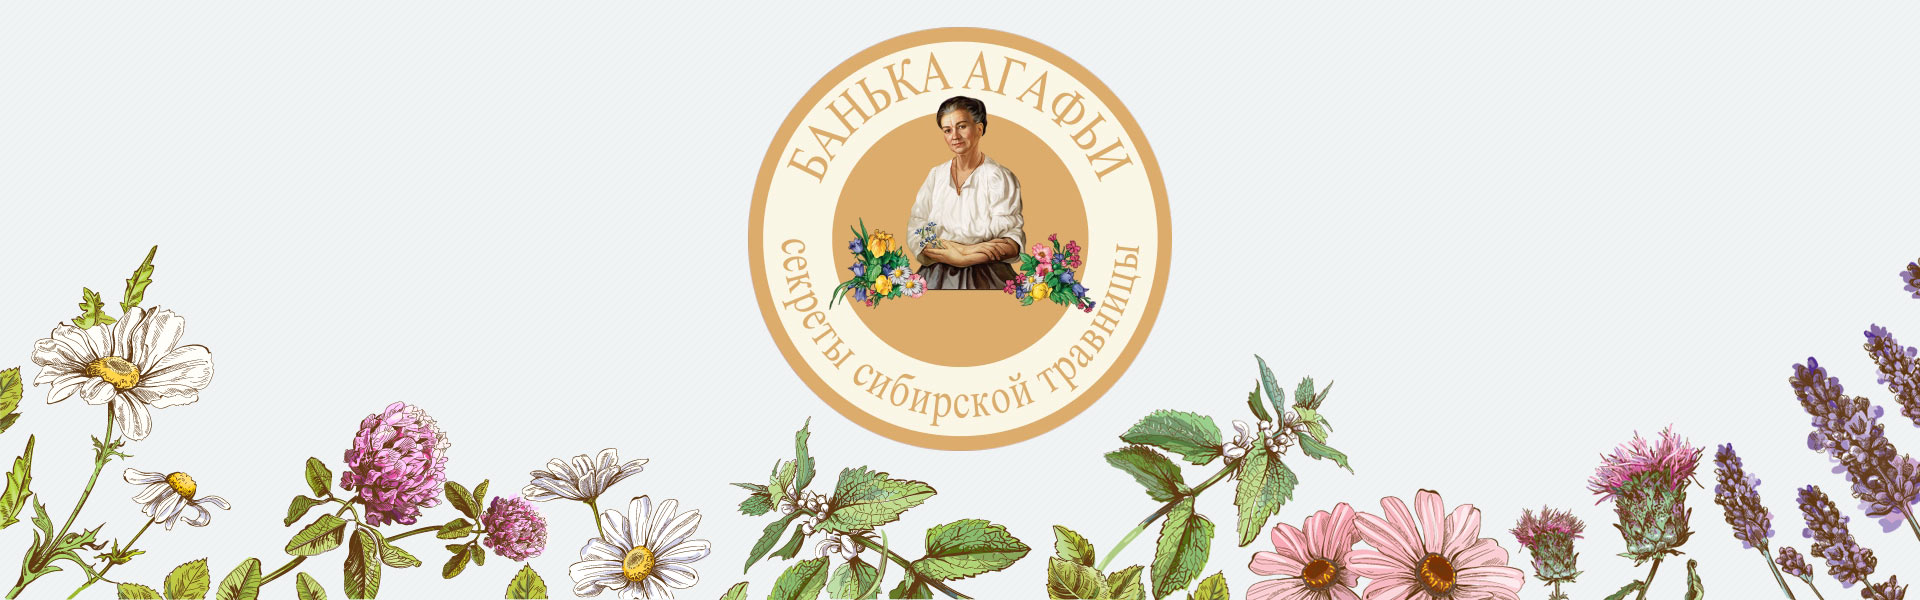 Сертифицированная зубная паста RBA Natural «Черная береза сибирская», 85 г Recepty Babuški Agafji